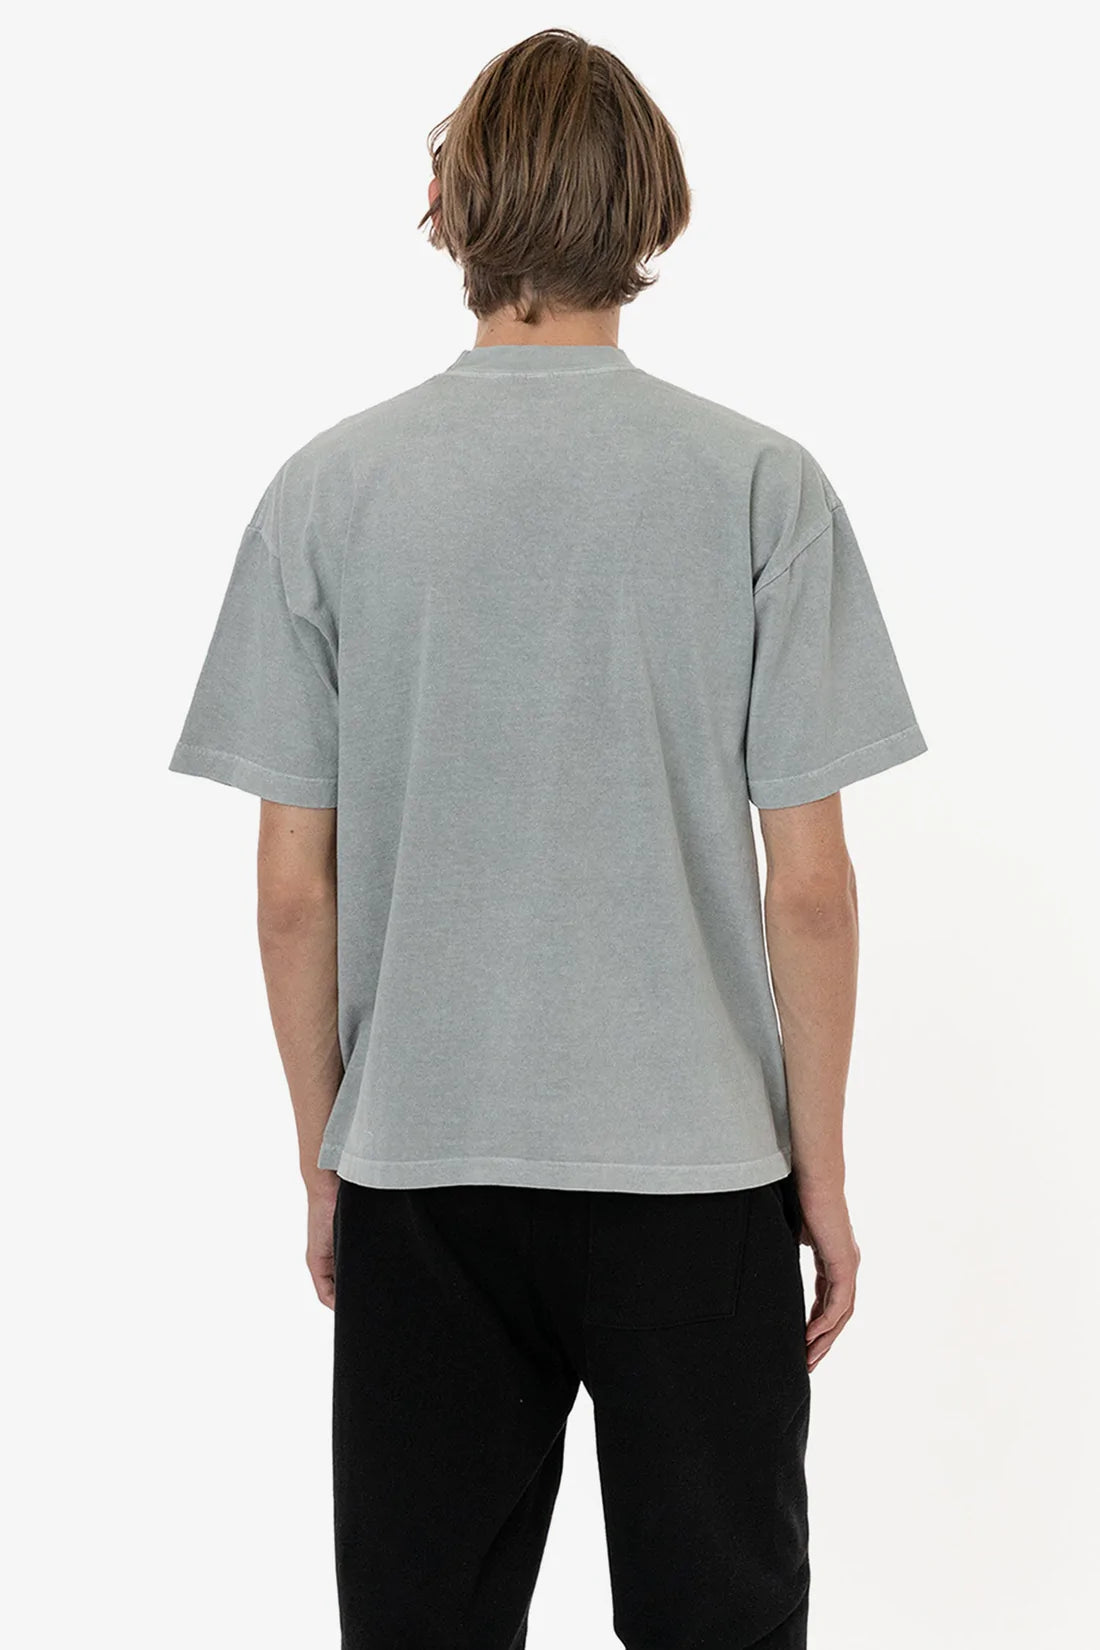 6.5 Oz. Garment Dye T-Shirt Crewneck – T-Shirt Apparel | Plus Wholesale LA x Apparel A2Z Mona | Size